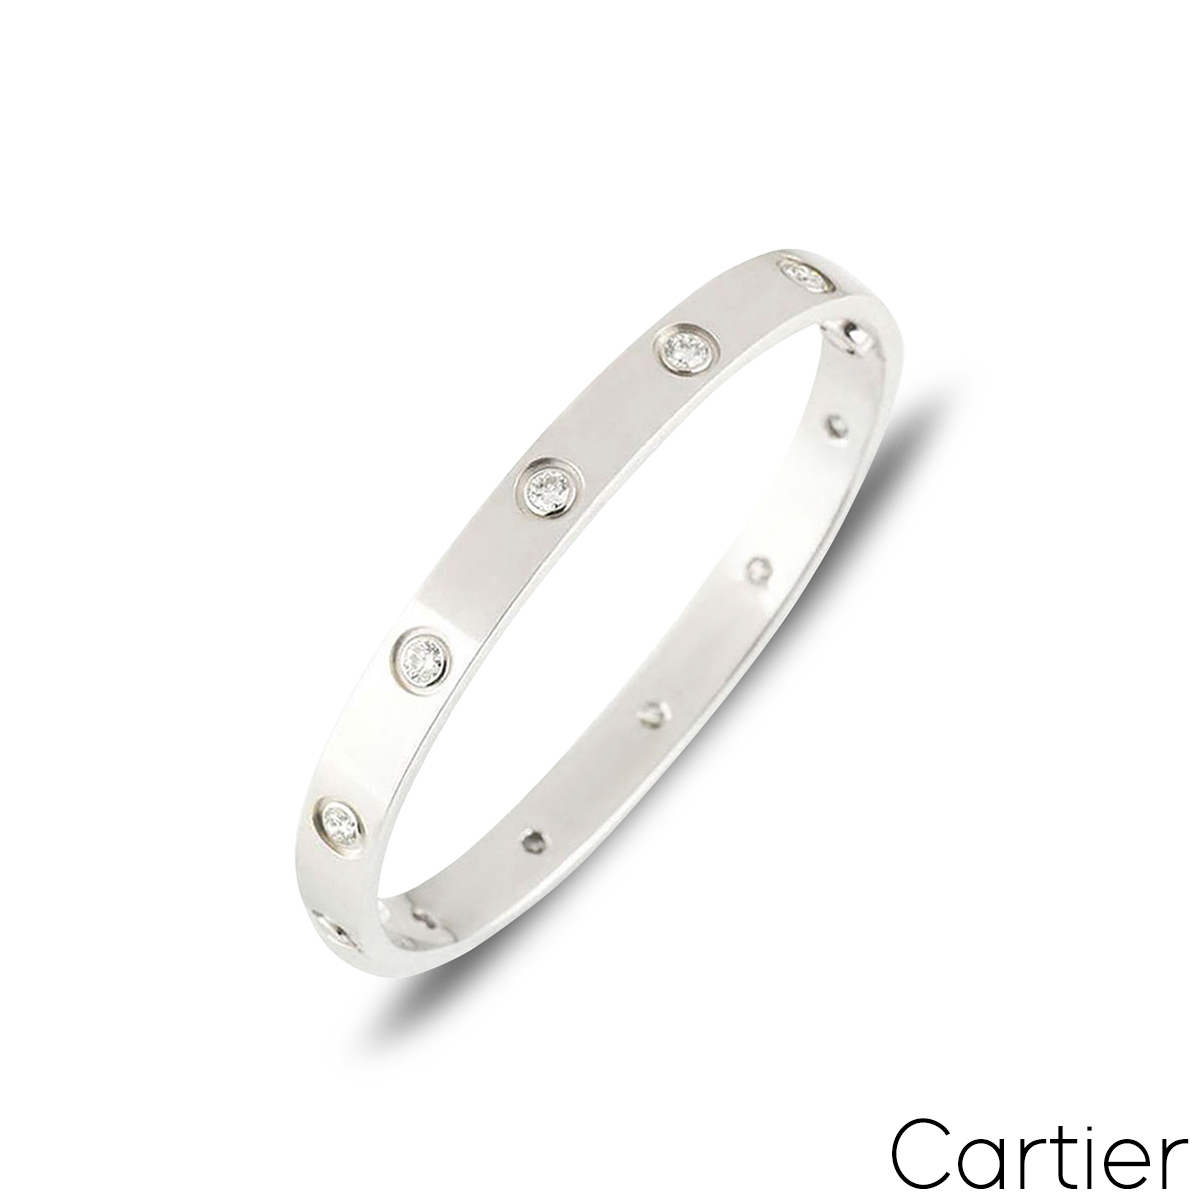 Cartier White Gold Full Diamond Love Bracelet Size 17 B6040717